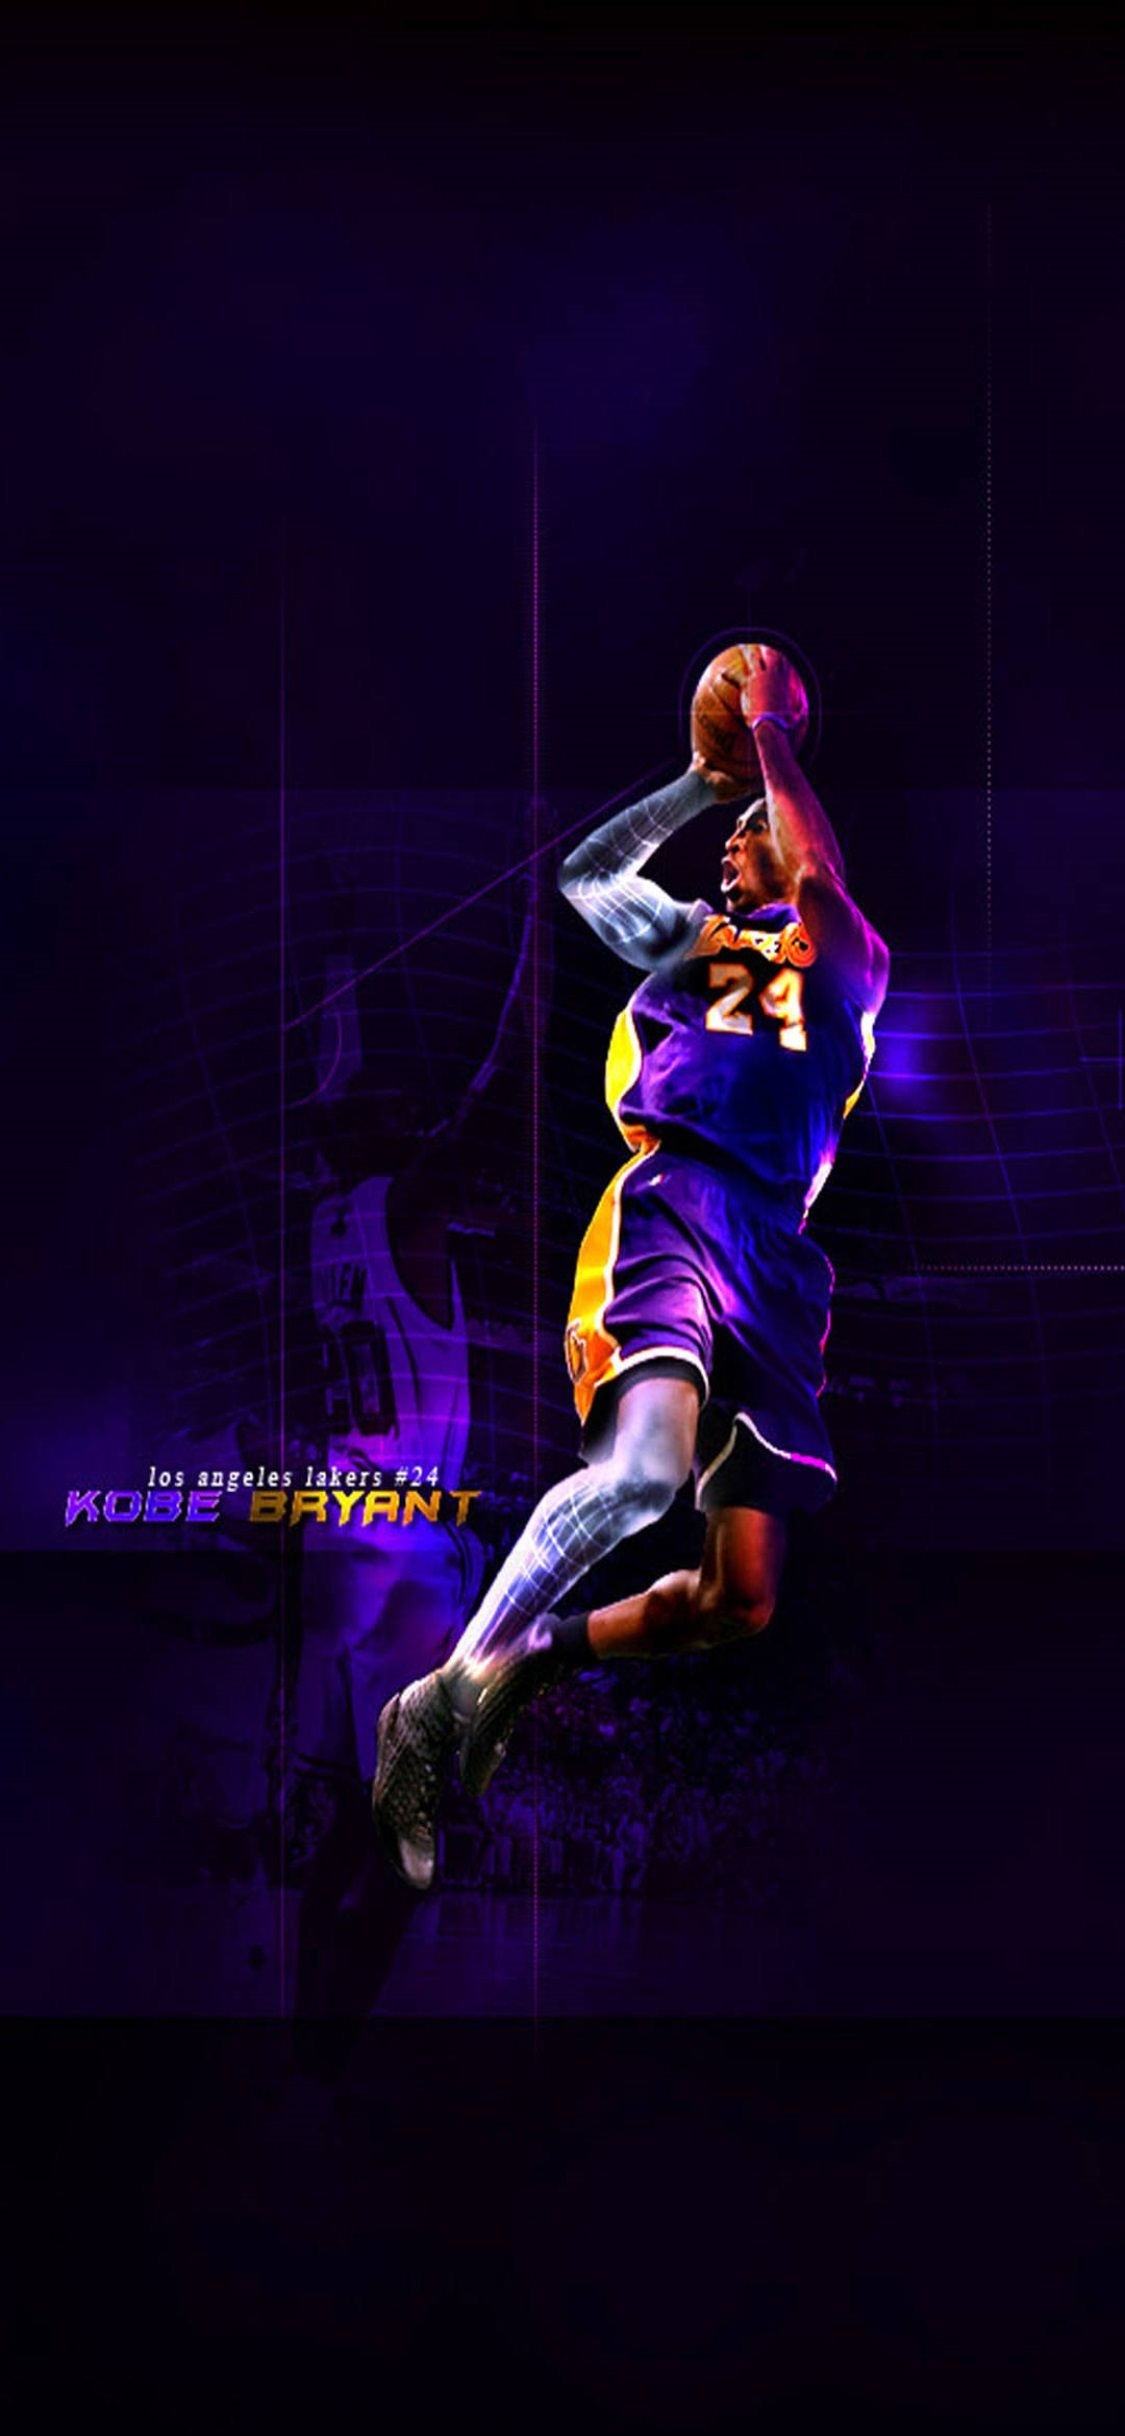 Kobe Bryant NBA Wallpaper 40 by skythlee on DeviantArt